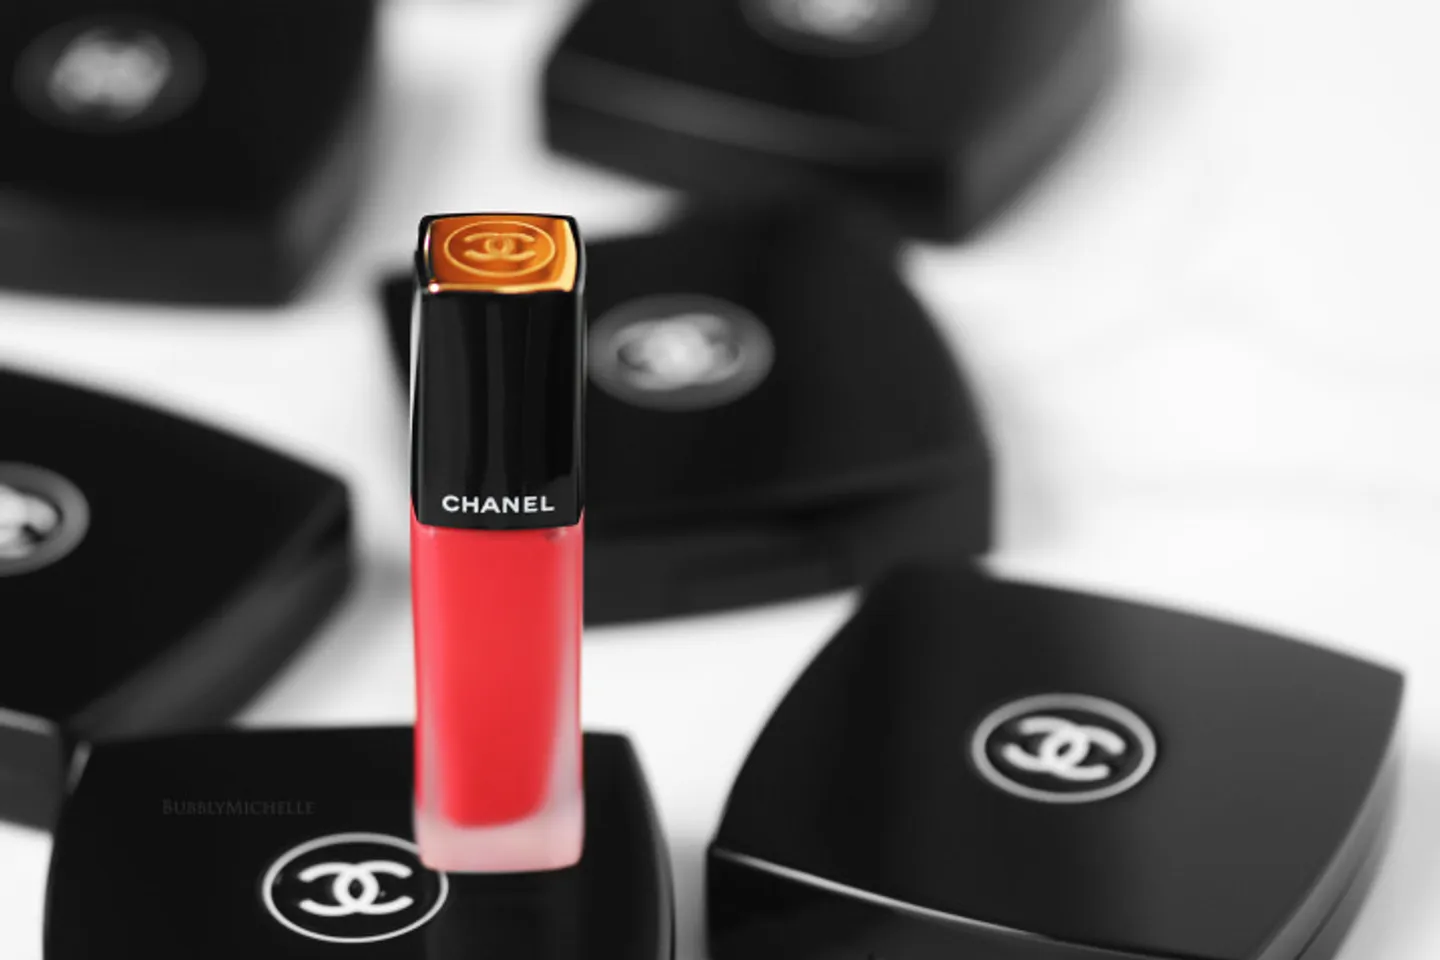 Chanel Rouge Allure ink có thiết kế nhỏ gọn, với logo Chanel nổi bật trên đầu